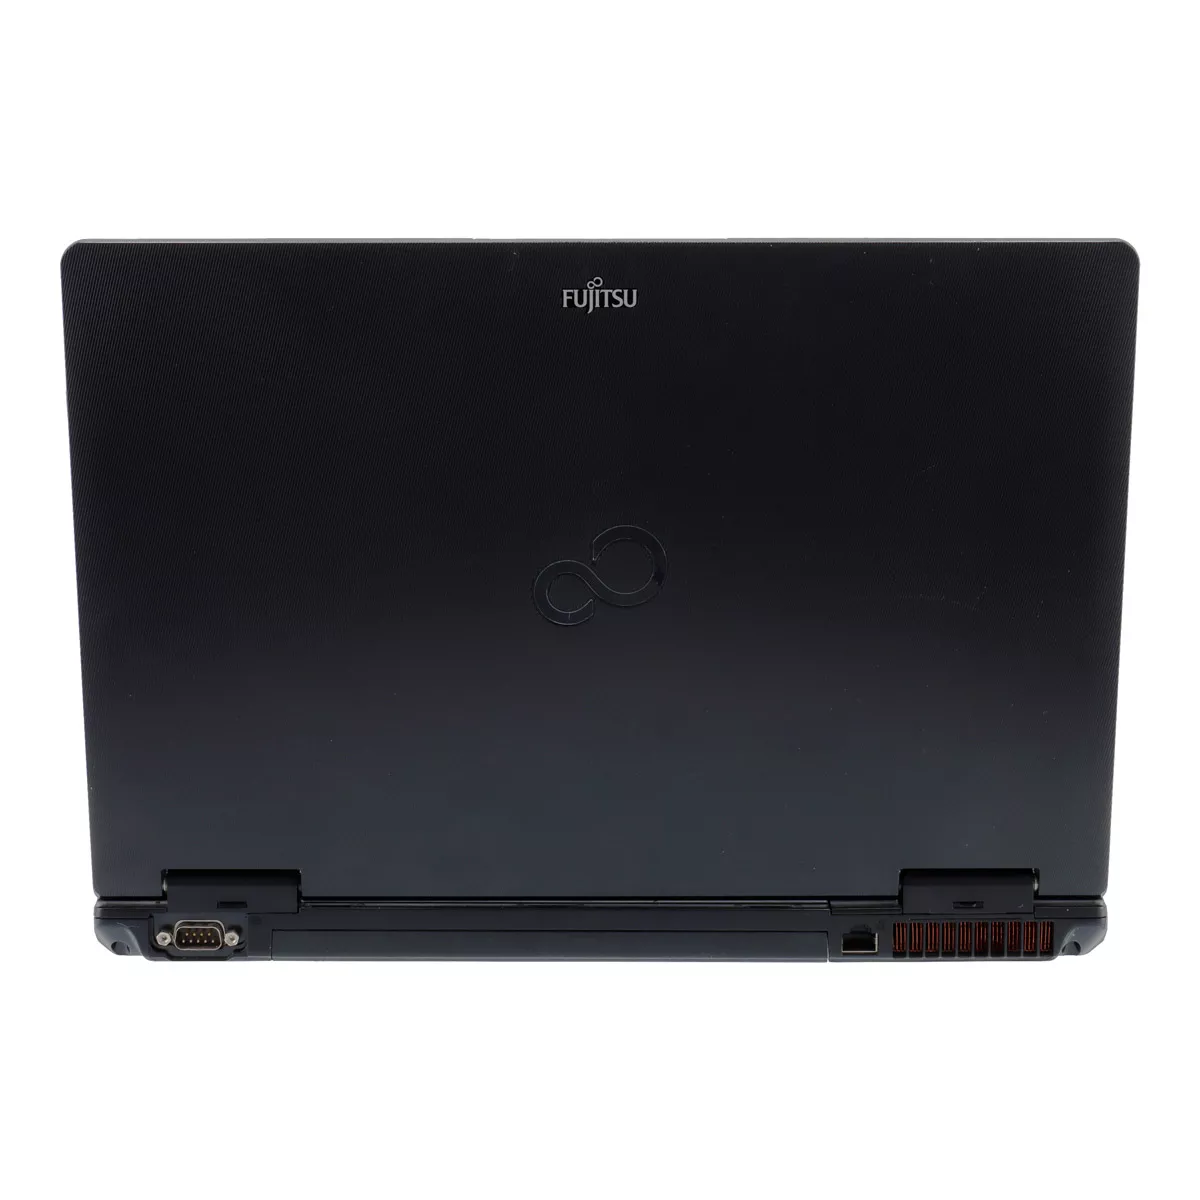 Fujitsu Lifebook E752 Core i5 3230M 2,60 GHz Webcam B